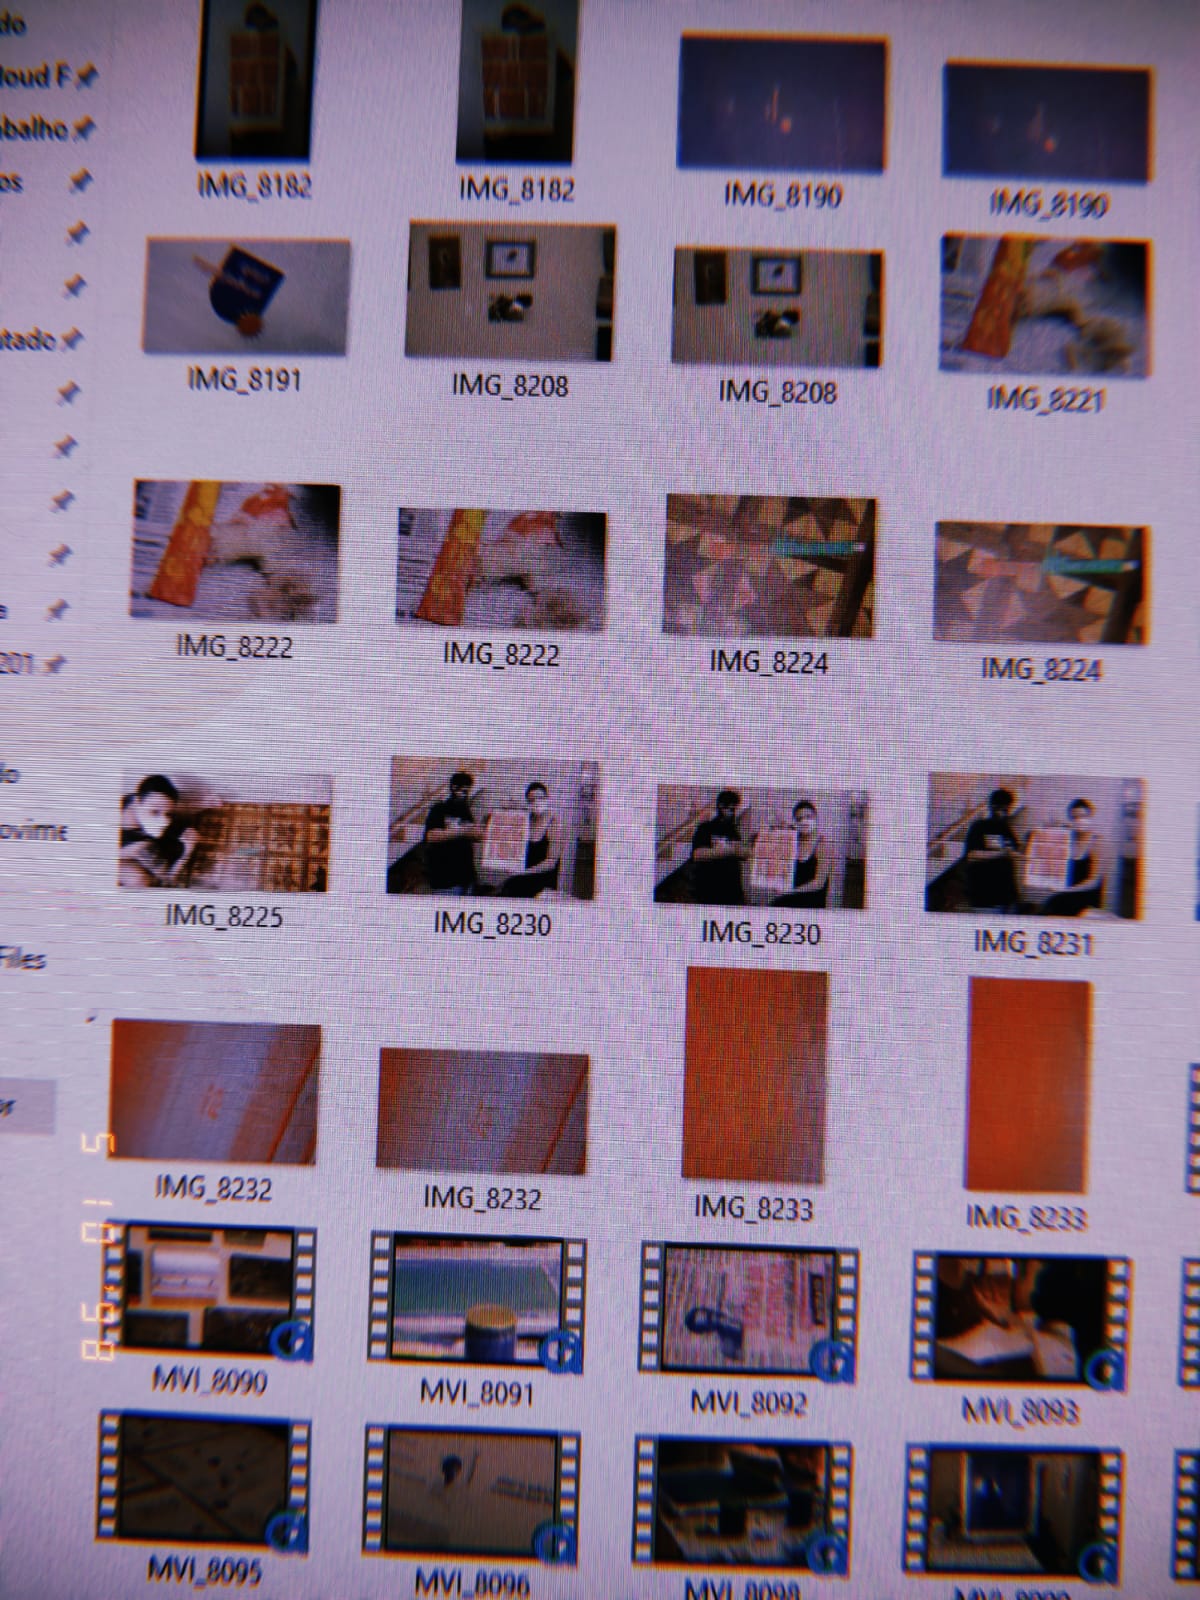 uma foto da pasta no pc onde baixei as filmagens, não dá pra entender direito o que tem, são várias miniaturas meio difíceis de distinguir